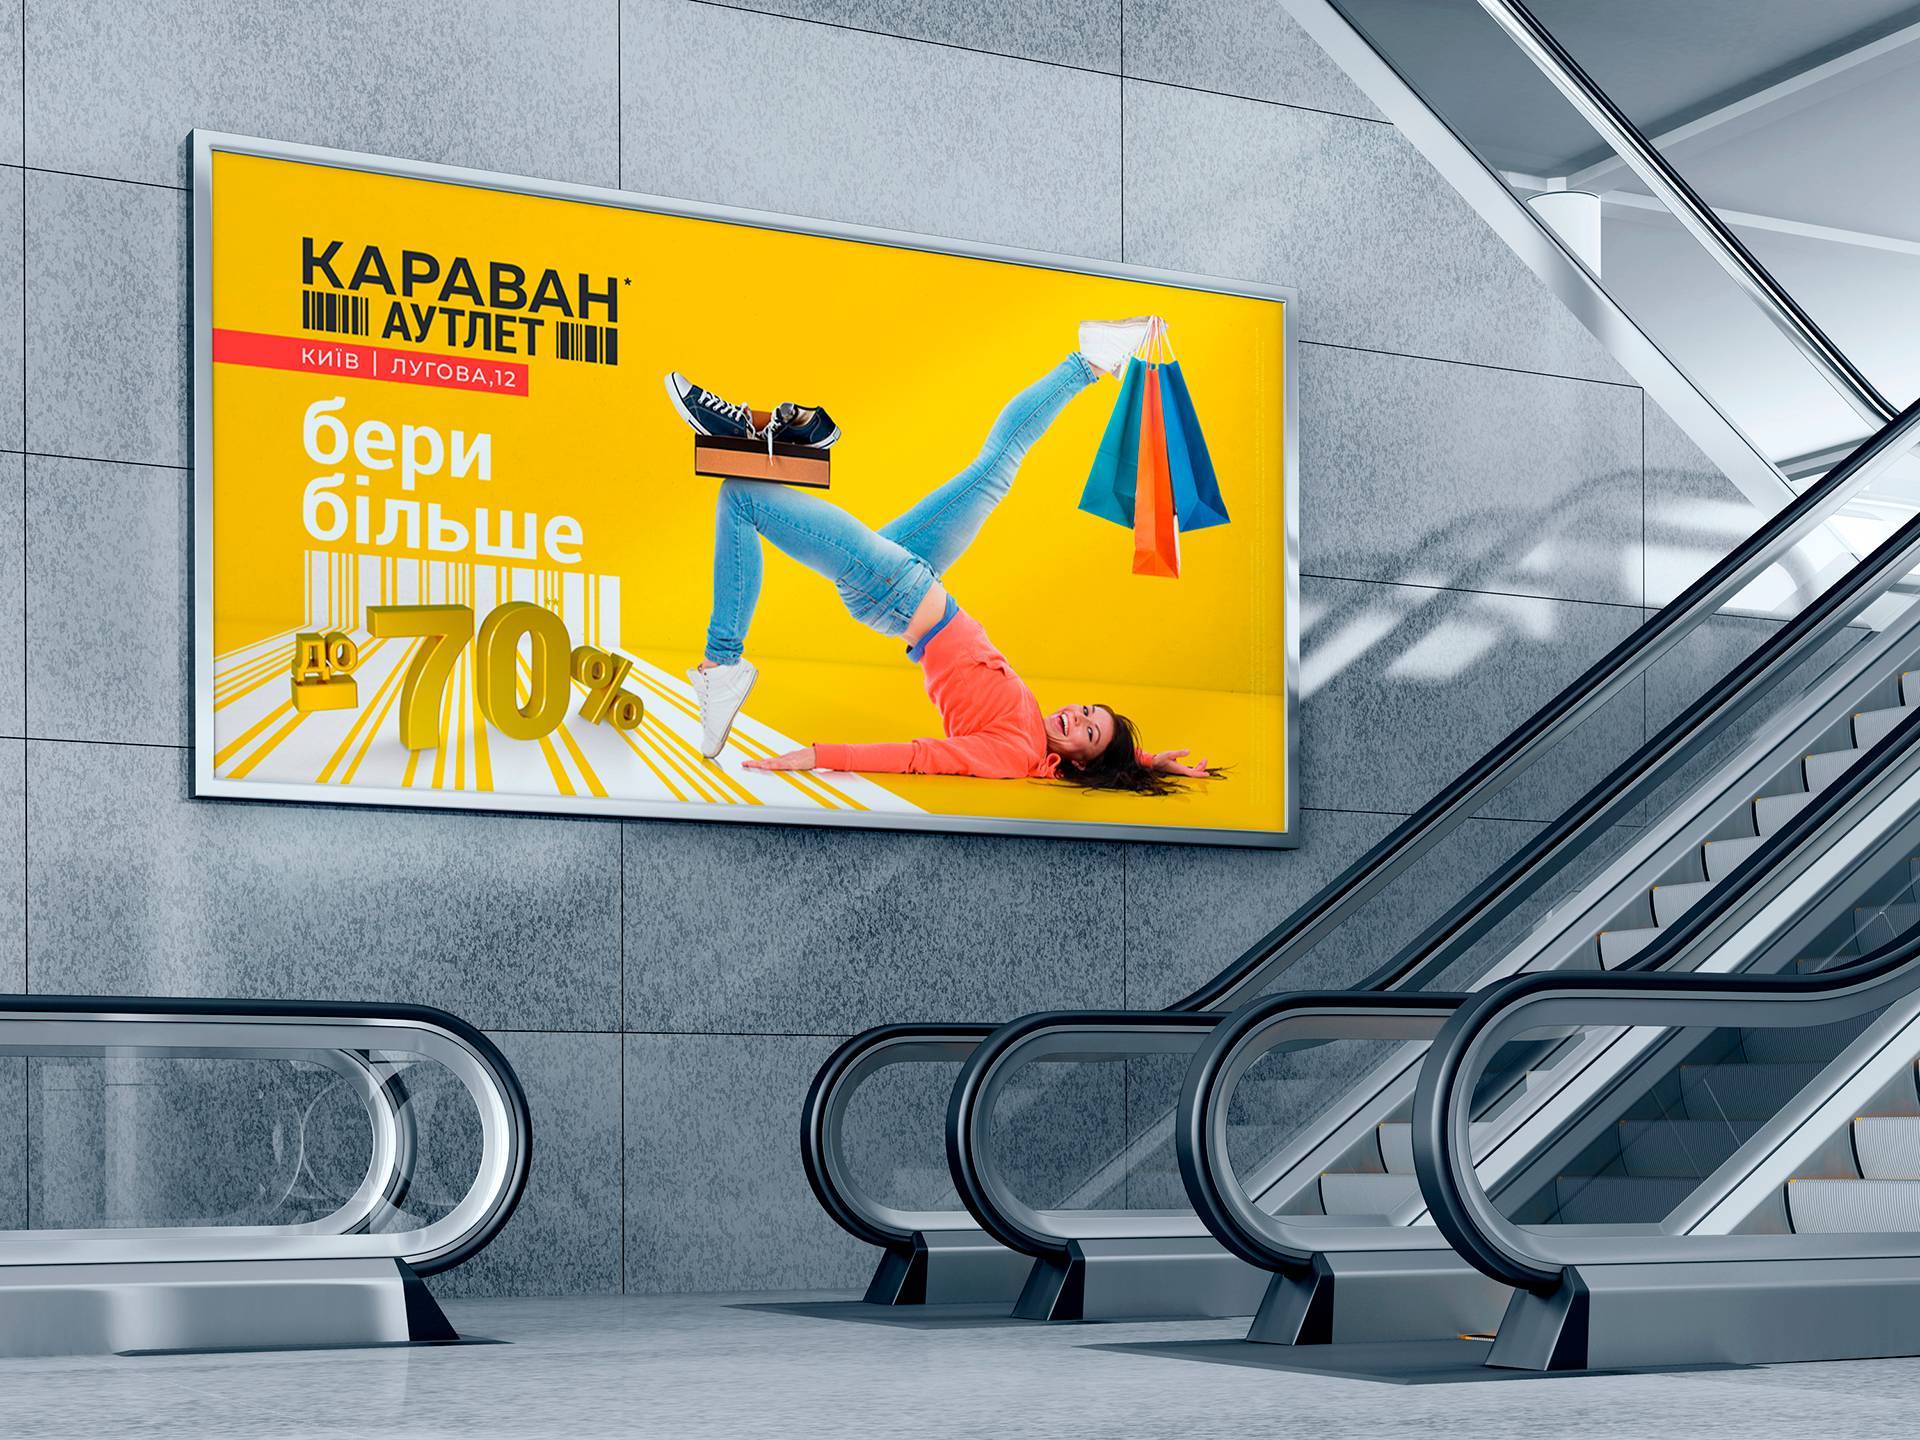 Разработка дизайна баннера бигборда, сити лайт Киев. Рекламный постер ТЦ КАРАВАН, БЕРИ БОЛЬШЕ